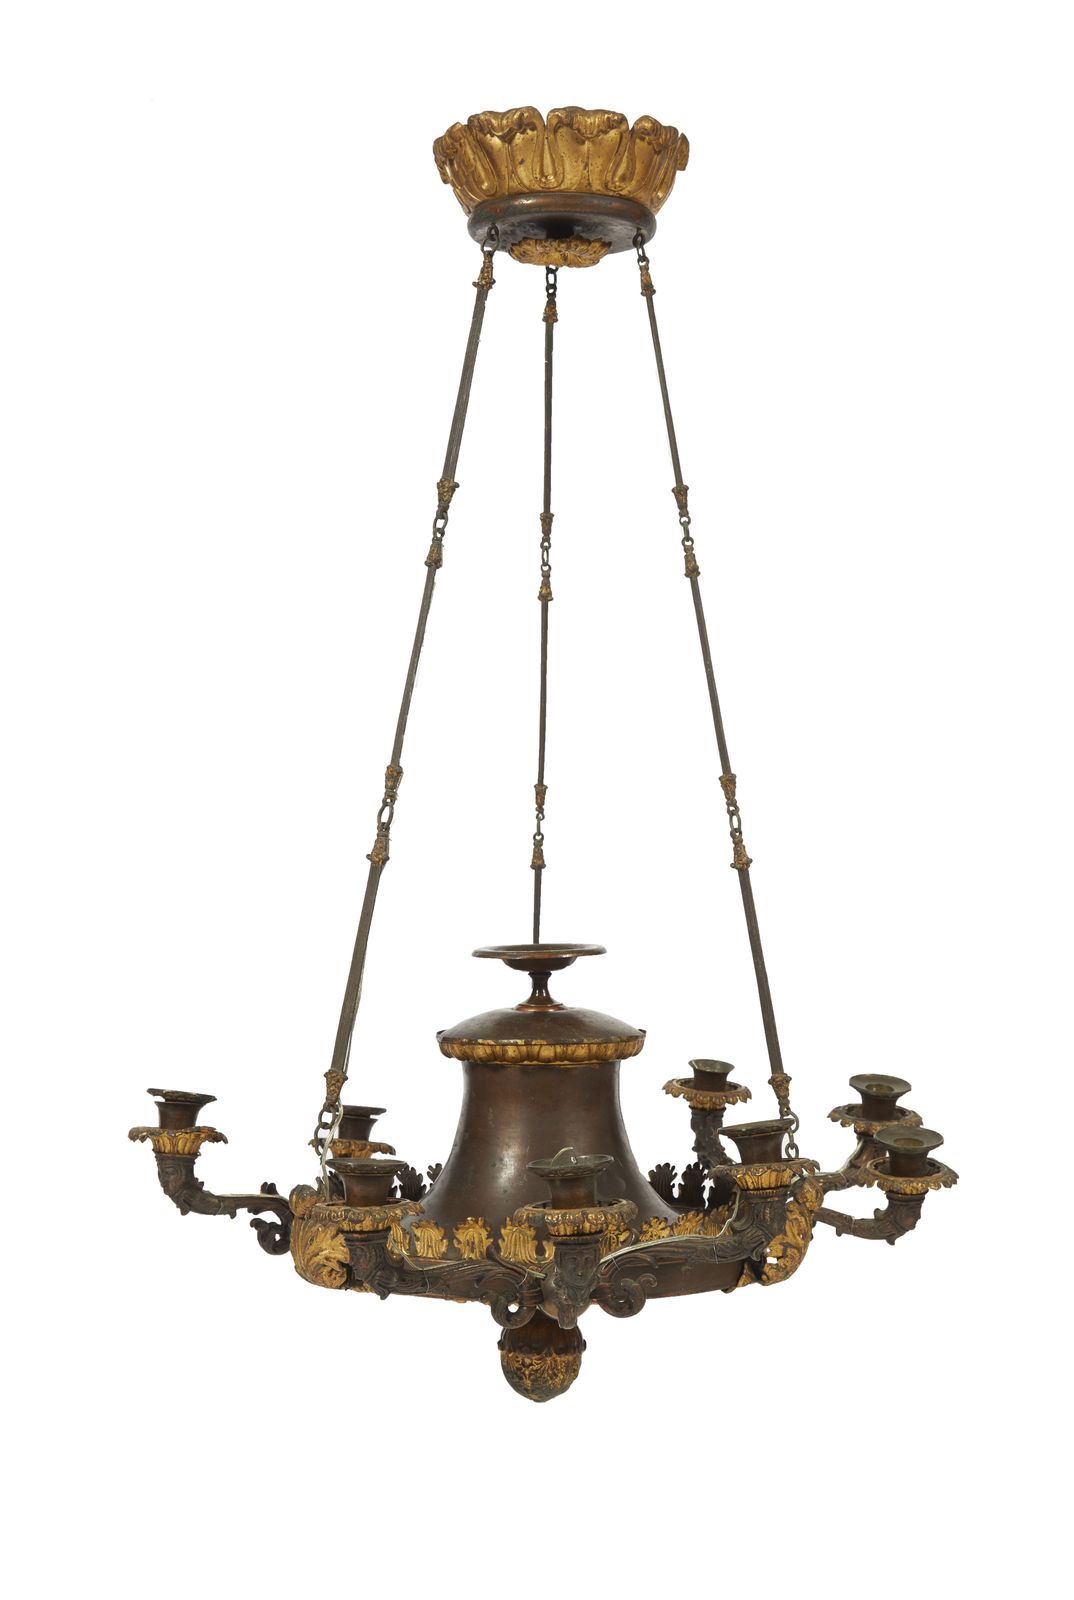 Null 122-镀铝和镀金的金属板吊灯，有九个灯臂，装饰有风格化的刺桐树；笛子和男人的面具

路易-菲利普时期

90x62厘米